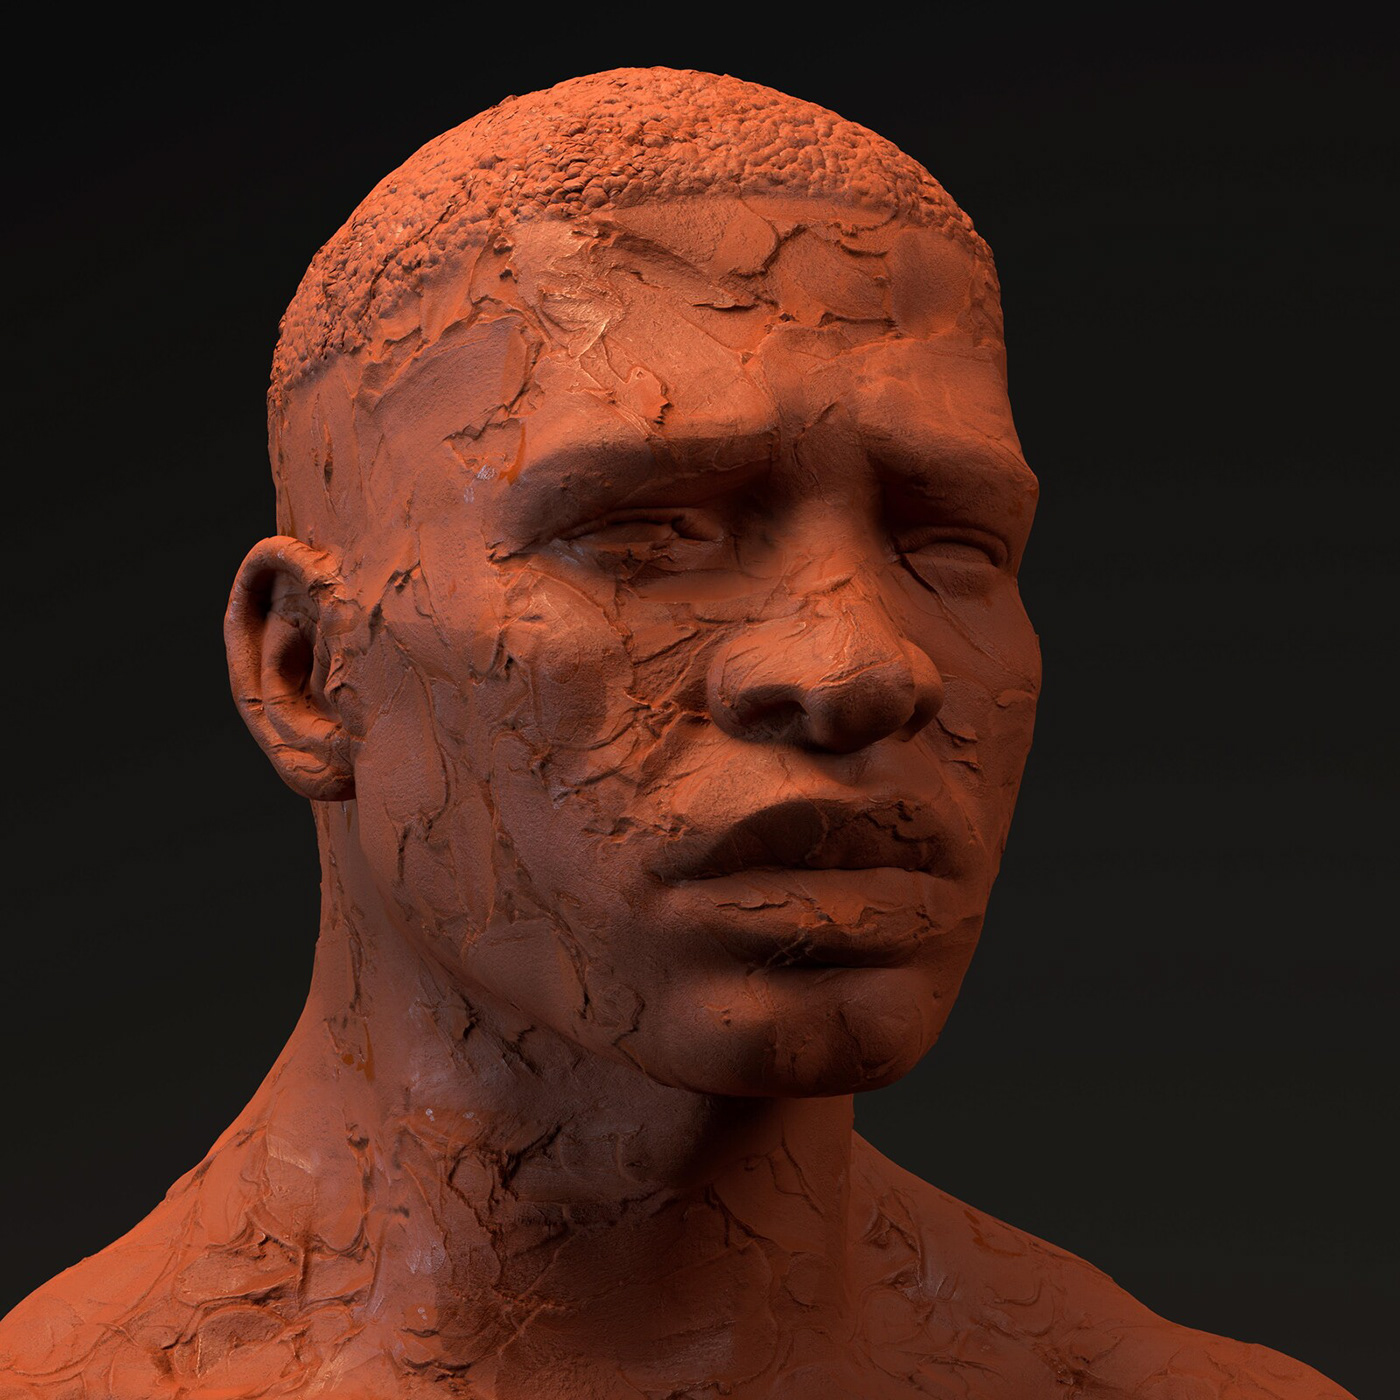 3D blender3d bust clay facial modeling 3d oculusmedium Render sculpture Virtual reality